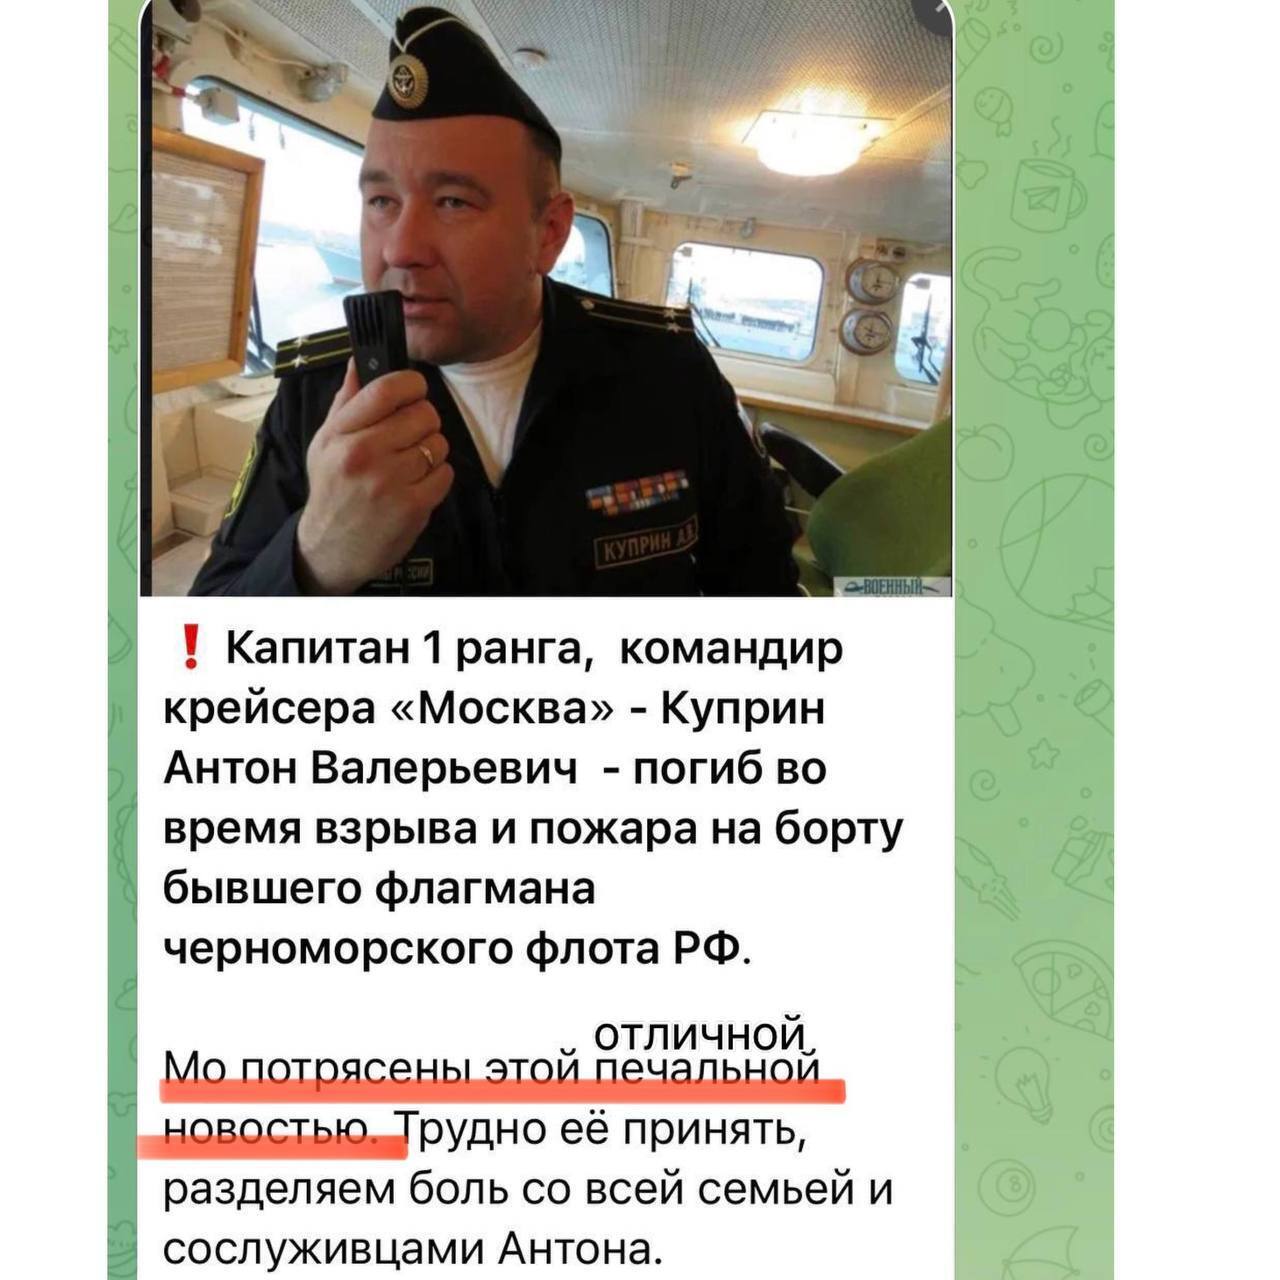 Сообщение о смерти командира "Москвы".